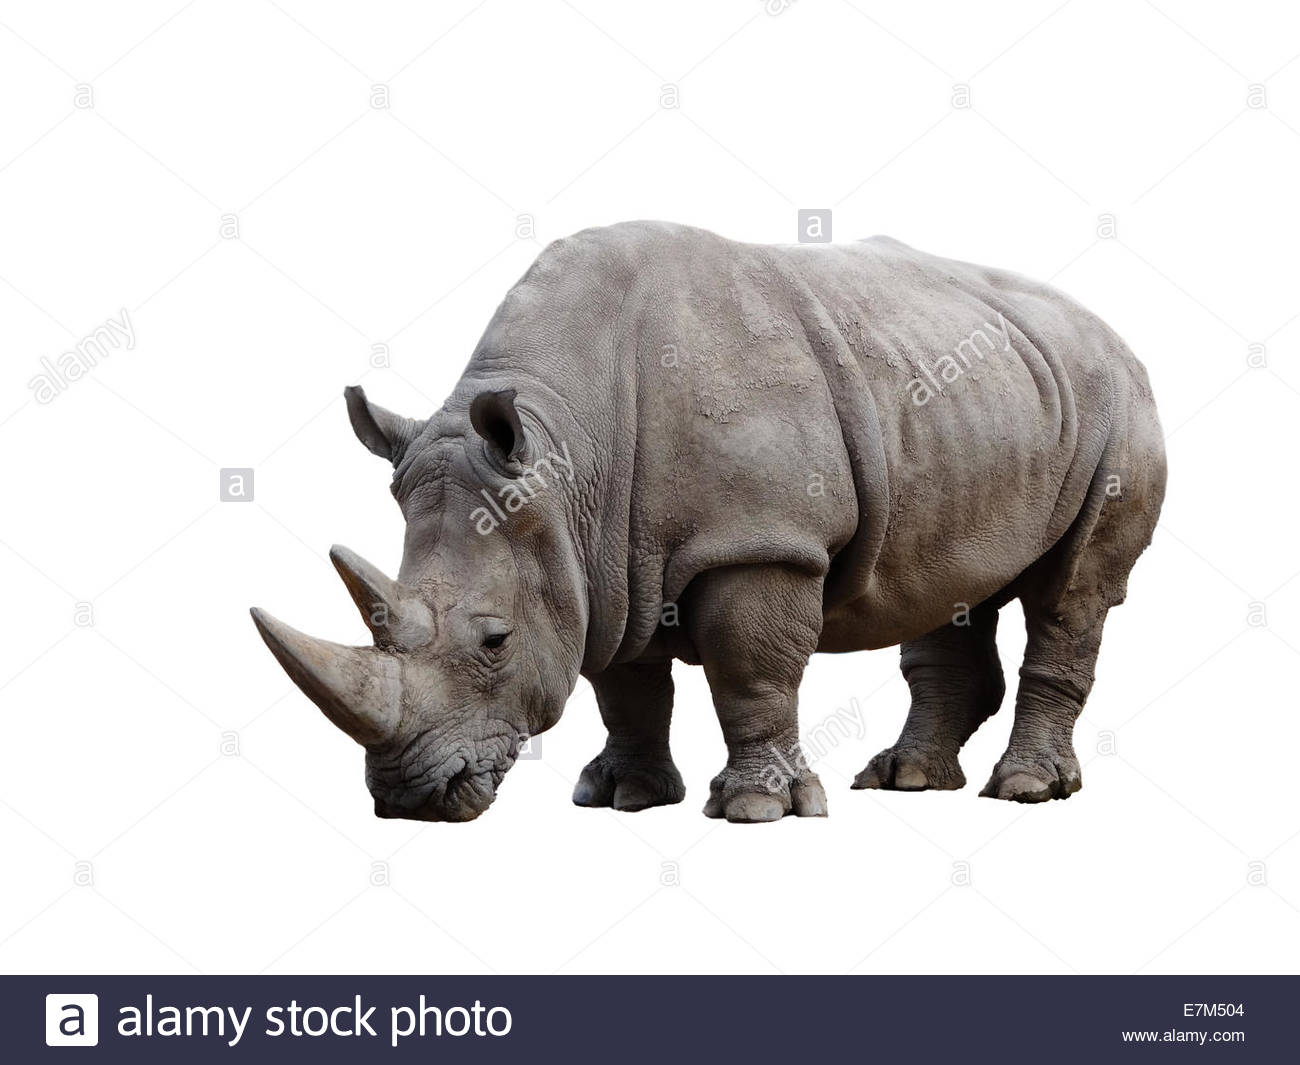 Tê giác Đen - Hãy mở ảnh liên quan đến Tê giác Đen để chiêm ngưỡng một trong những loài động vật quý hiếm nhất trên trái đất. Loài này đang bị đe dọa về số lượng, vì vậy chúng ta cần cảm thấy may mắn khi được nhìn thấy chúng và tôn trọng việc bảo vệ chúng.